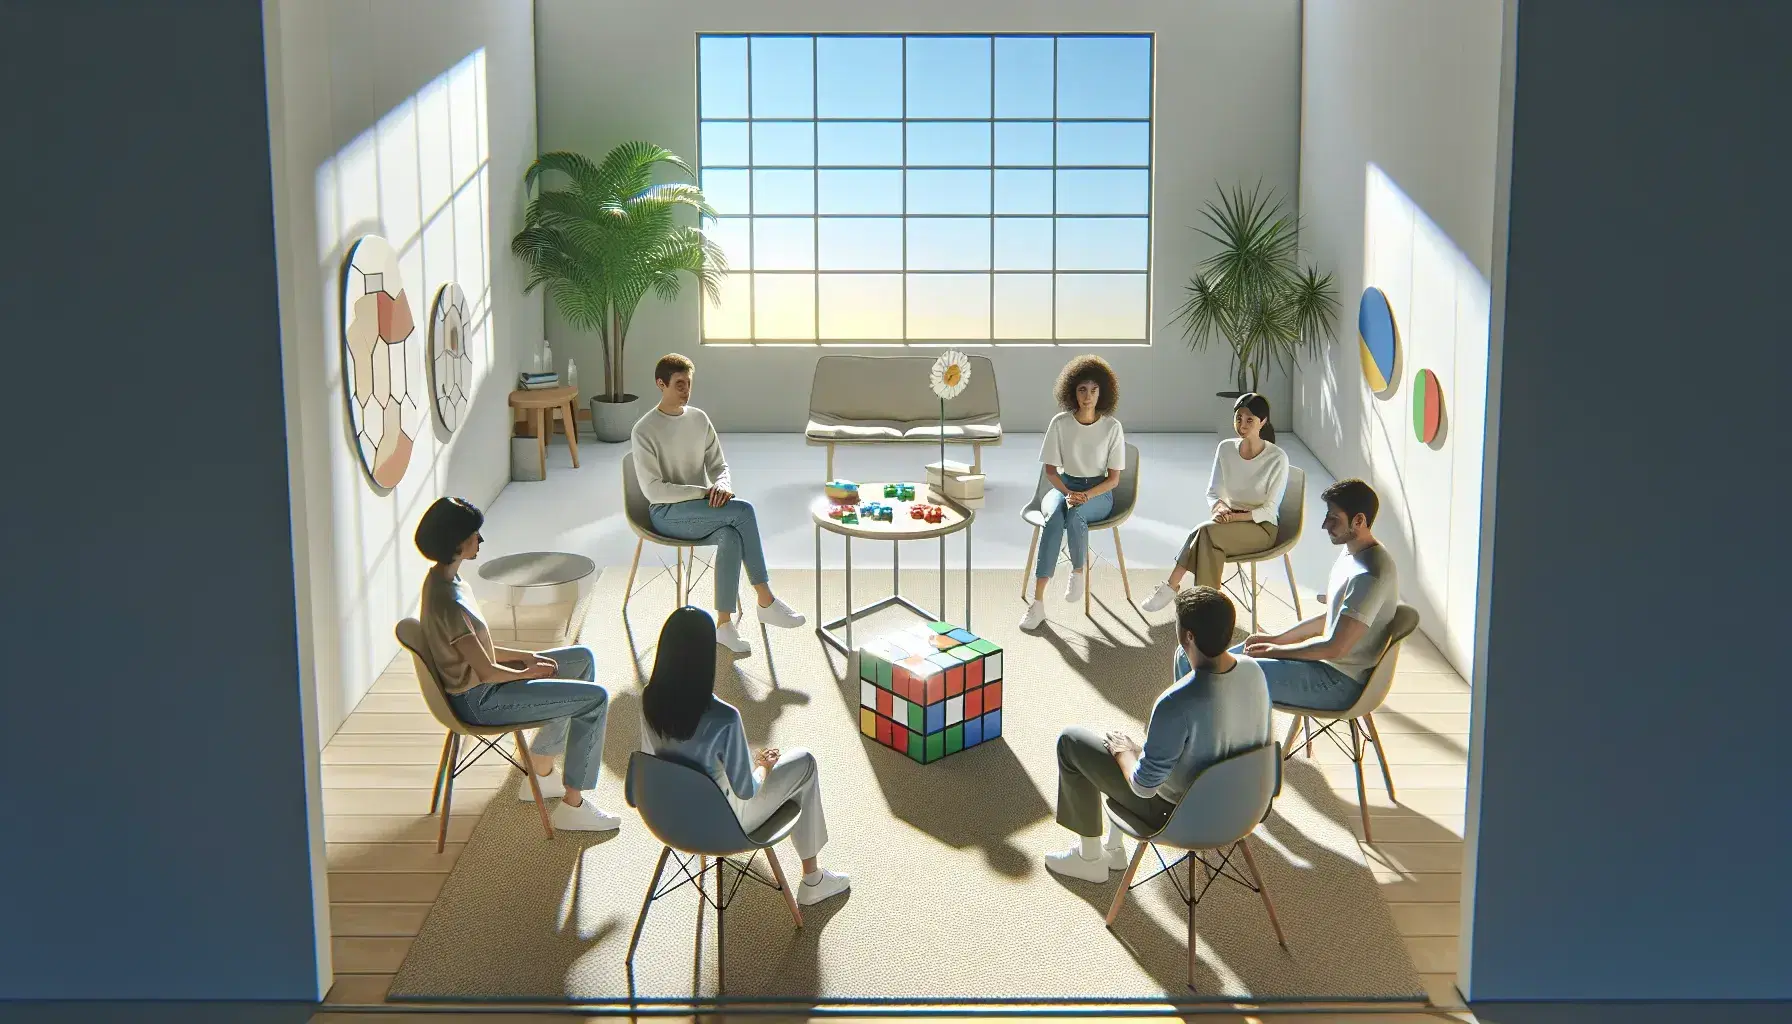 Grupo diverso de cinco personas sentadas en círculo resolviendo un rompecabezas y un cubo de Rubik en una sala iluminada con ventana al exterior.